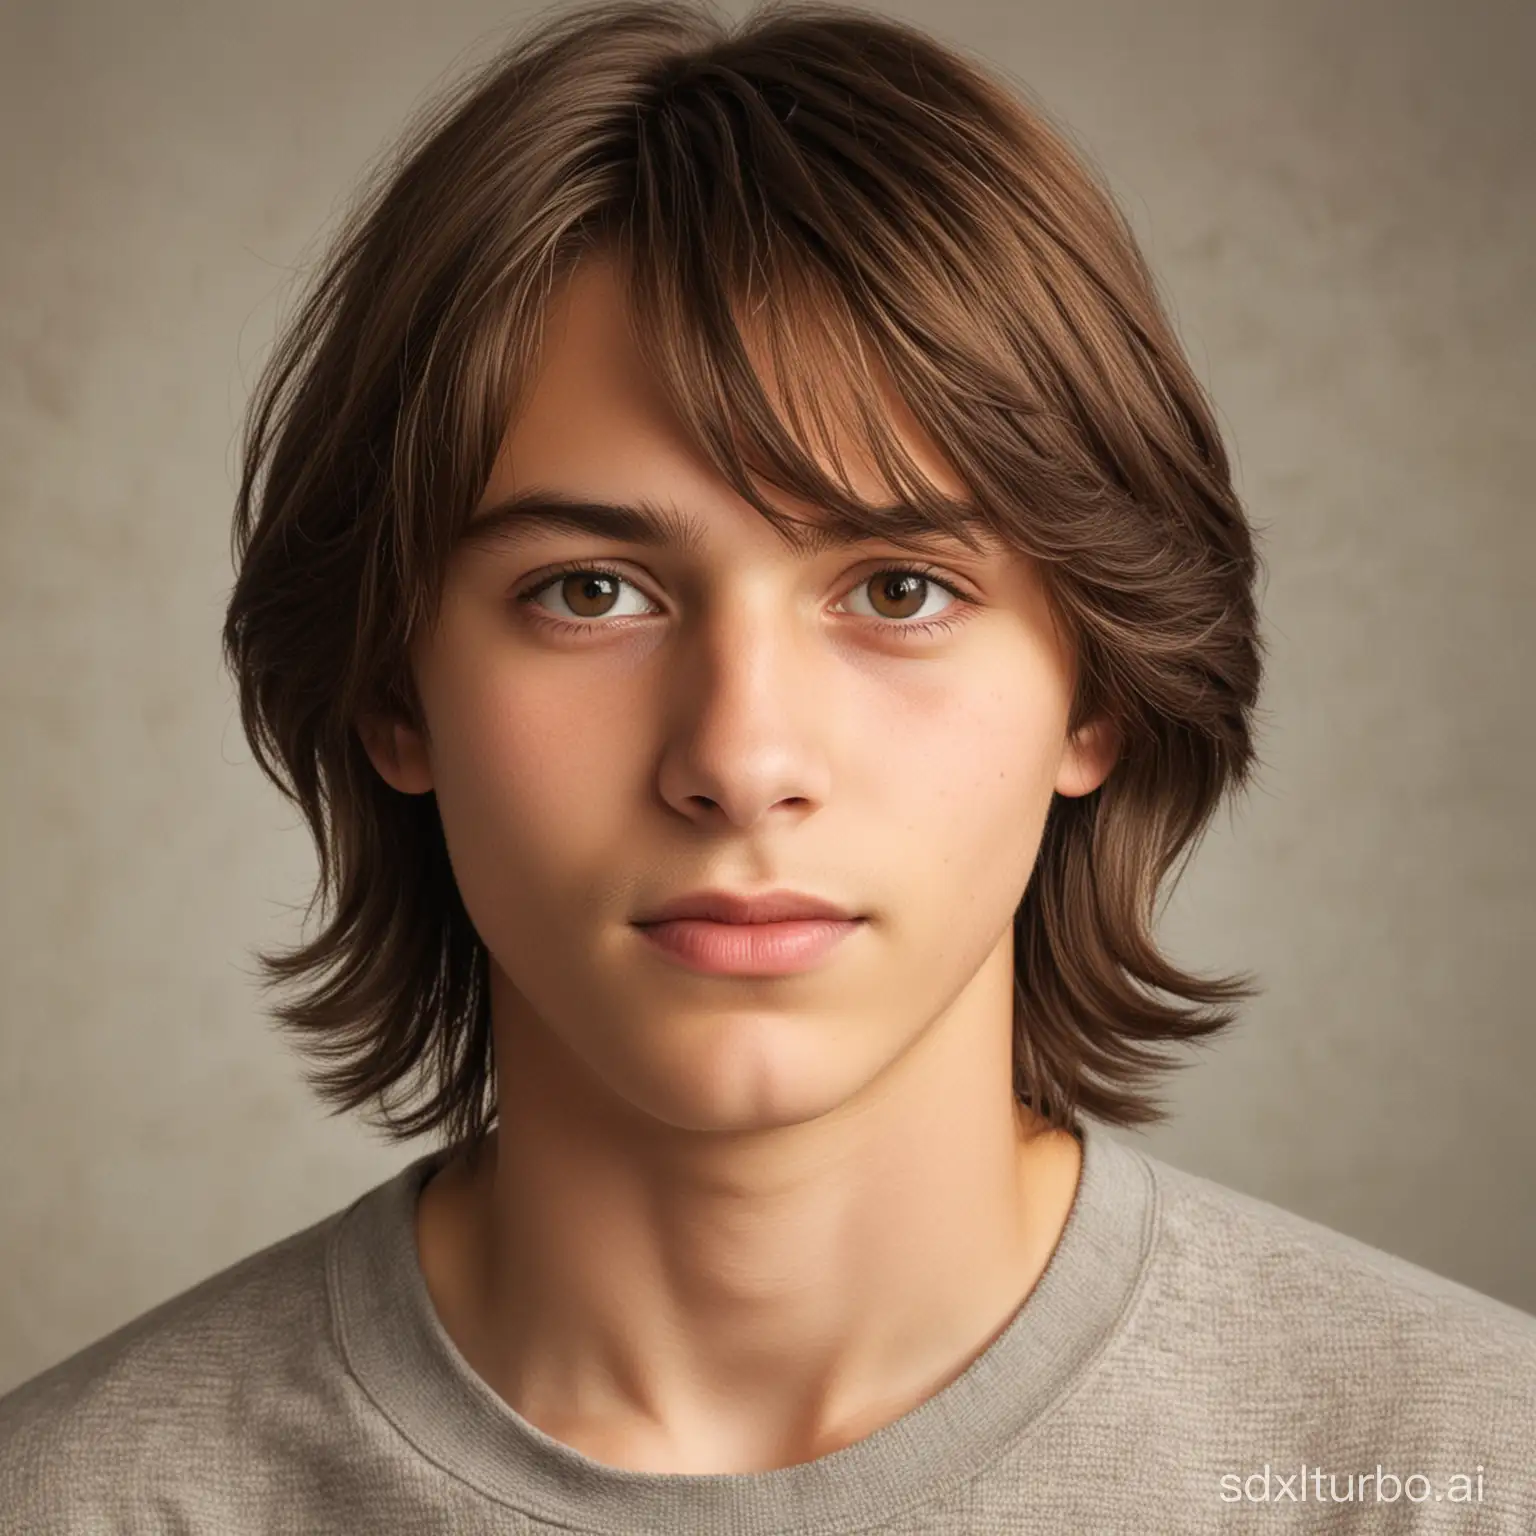 en kille på 14 år som heter Arvid Flodén med brunt axellångt hår med bruna ögon